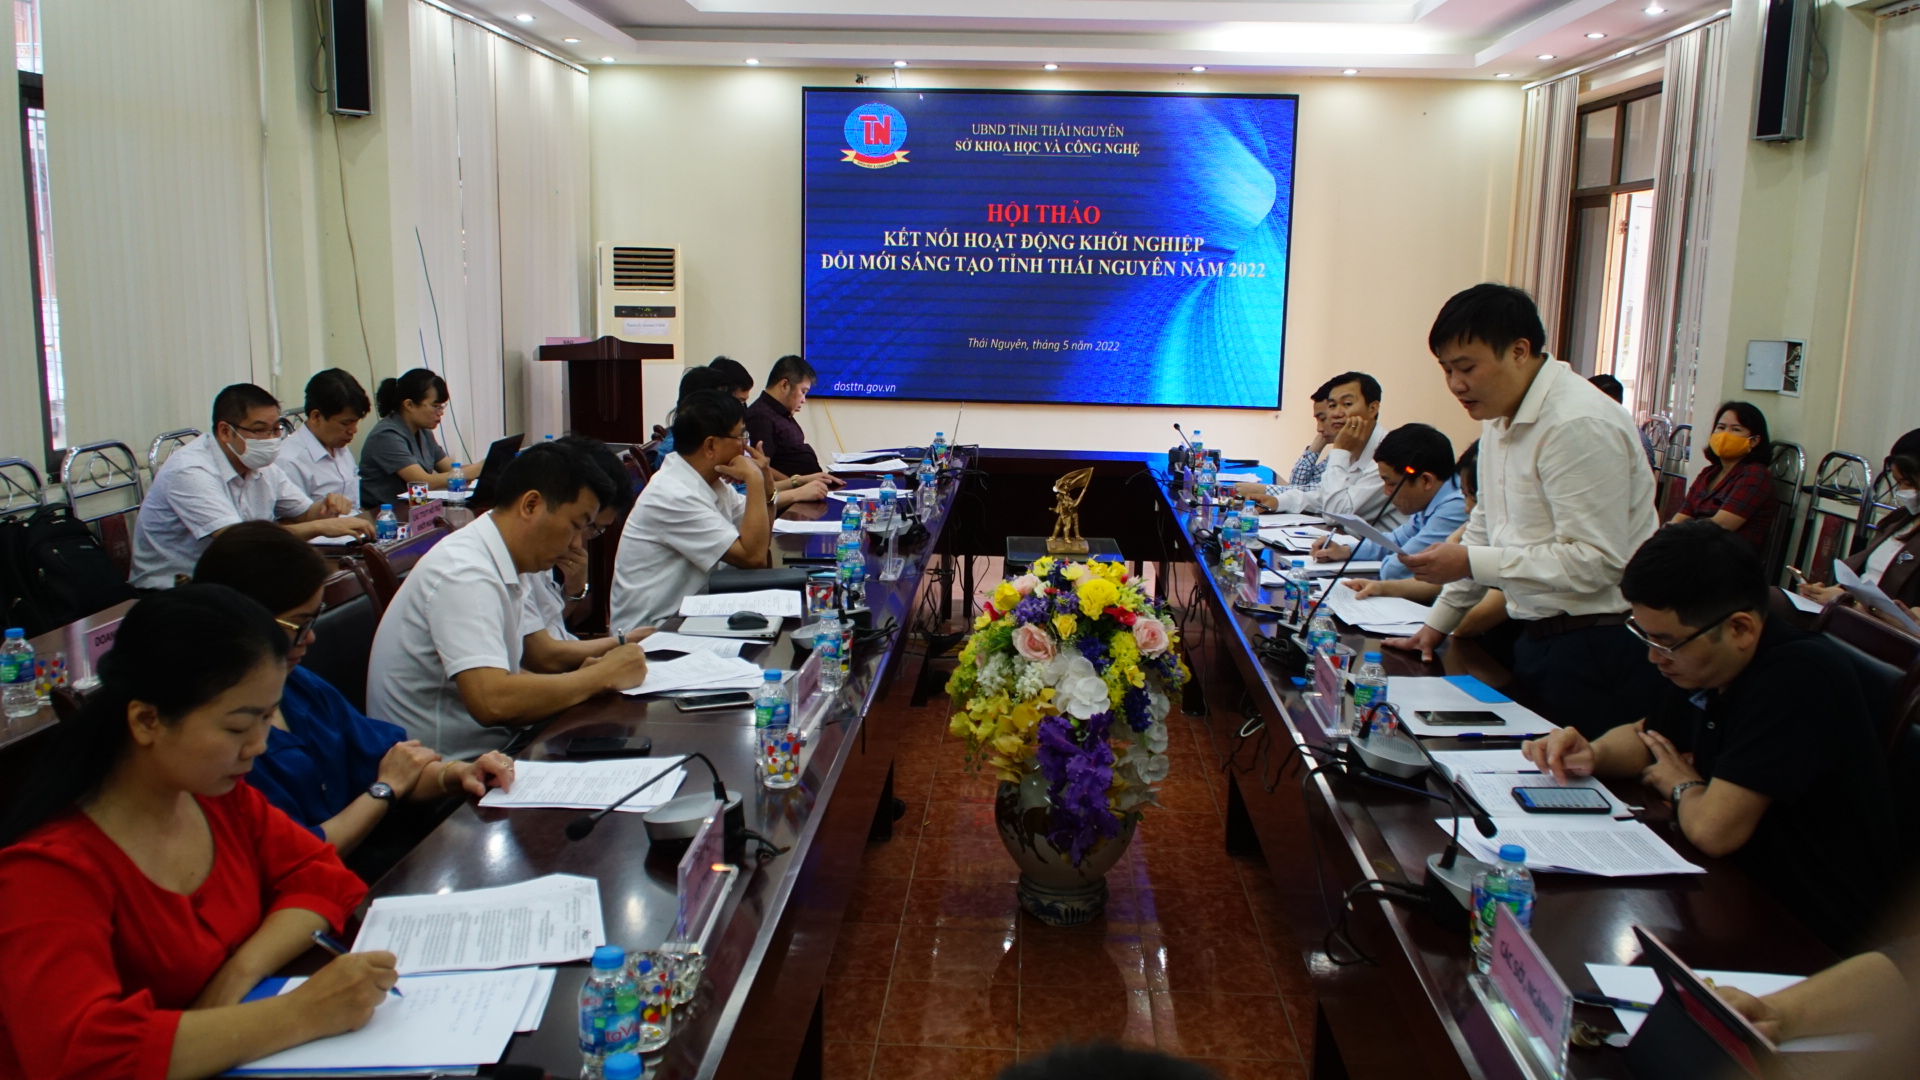 Hội thảo kết nối hoạt động khởi nghiệp, đổi mới sáng tạo tỉnh Thái Nguyên năm 2022 -0